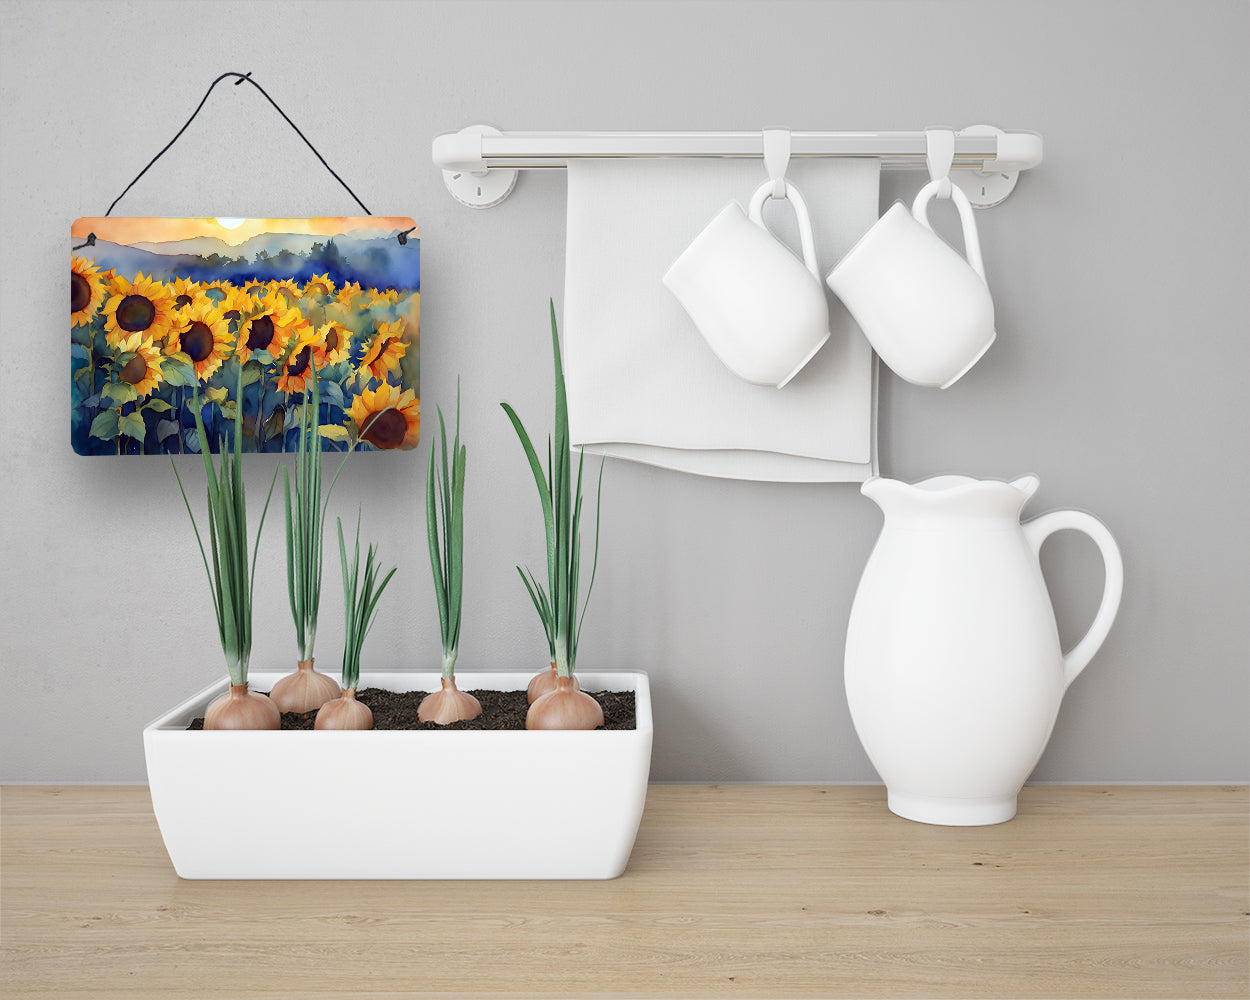 Sunflowers in Watercolor Wall or Door Hanging Prints